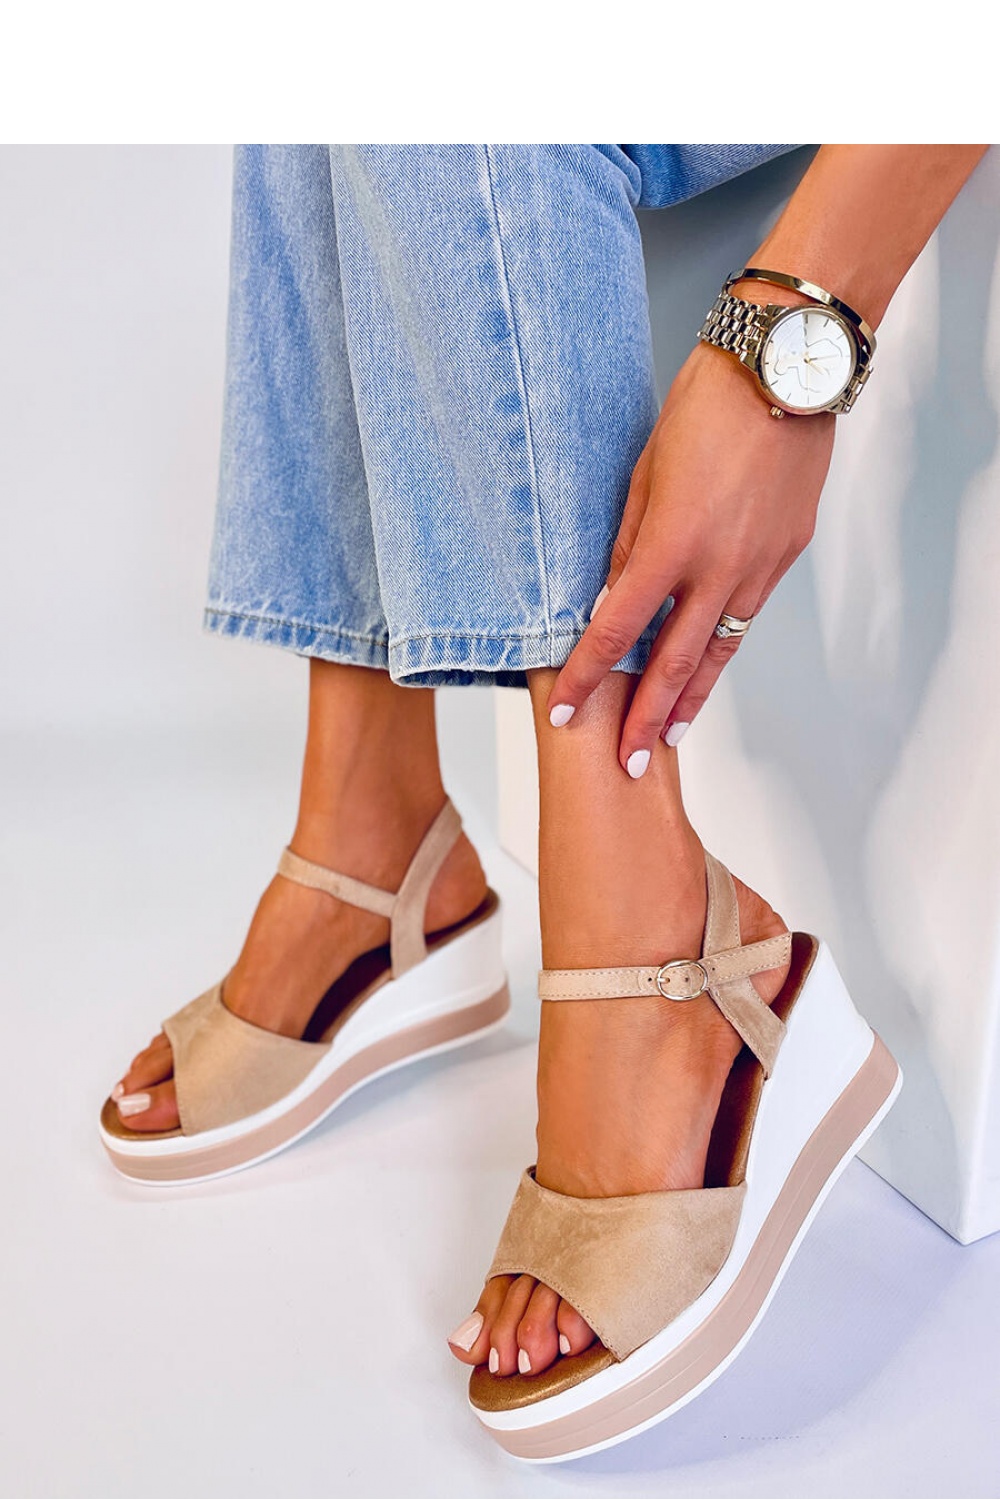 Sandalen mit Absatz model 179406 Inello beige Damen